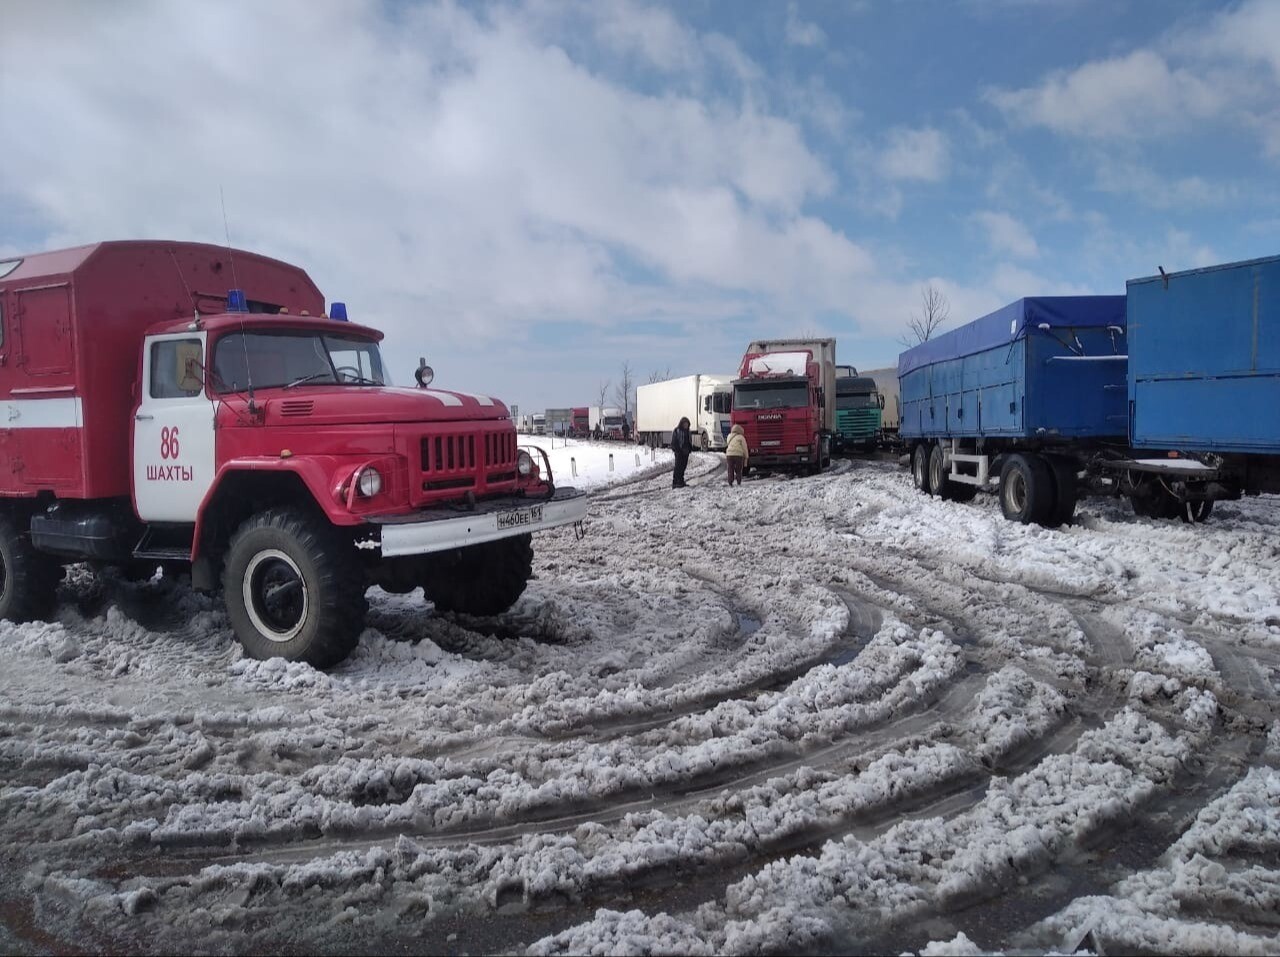 Восстановить движение на участке трассы М-4 "Дон" в Ростовской области планируется к концу дня - МЧС